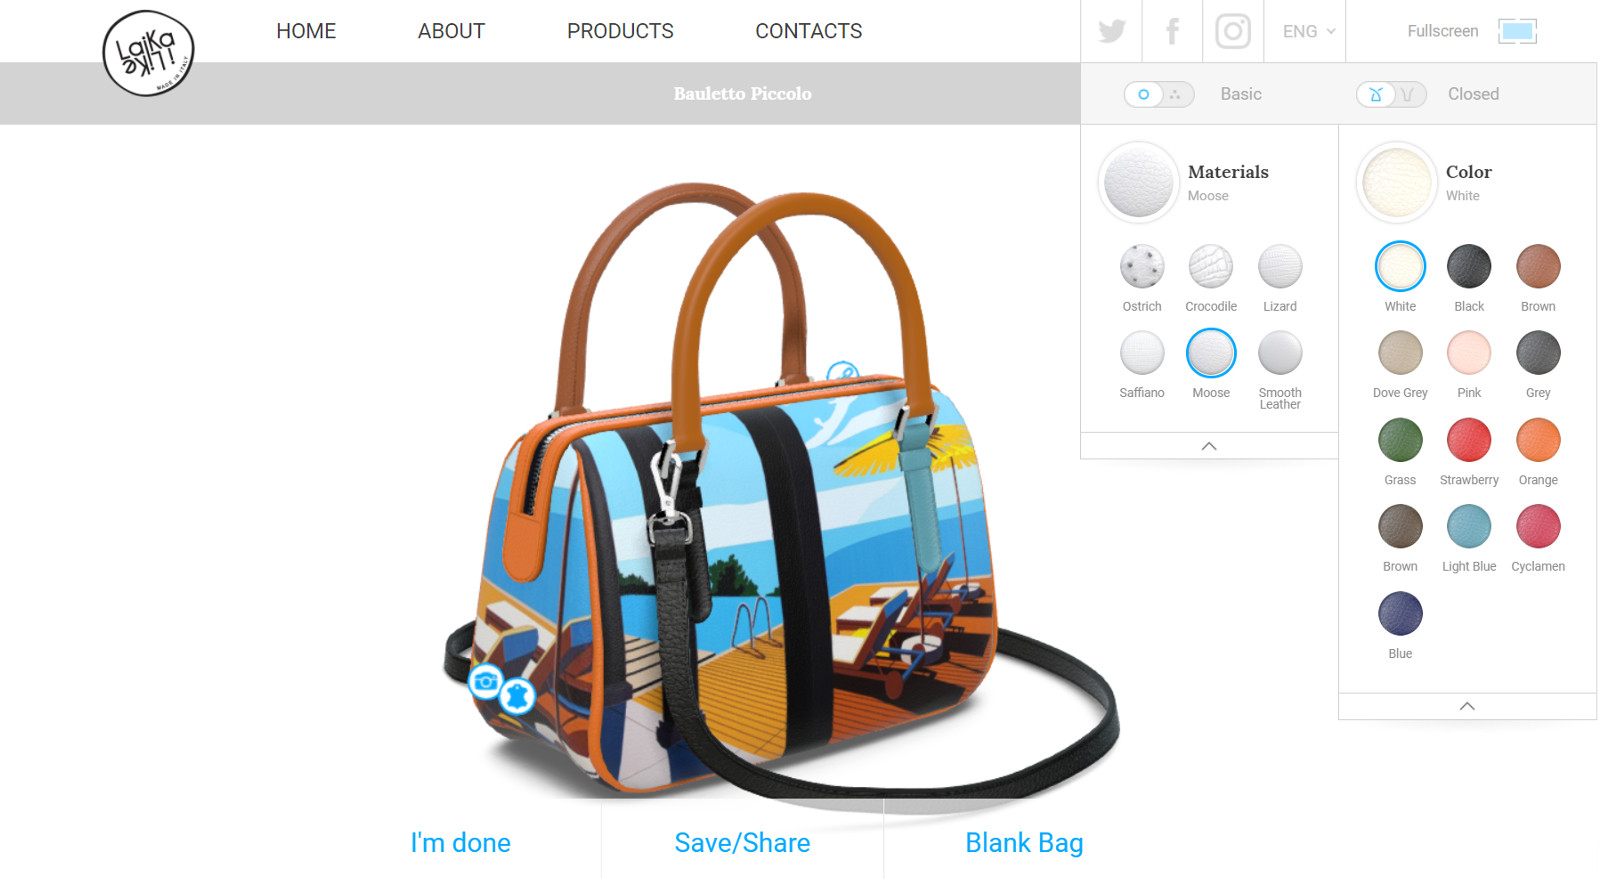 Handbag 3D Models for Download - 3D models - Free 3D Models - 3d model -  Free 3d